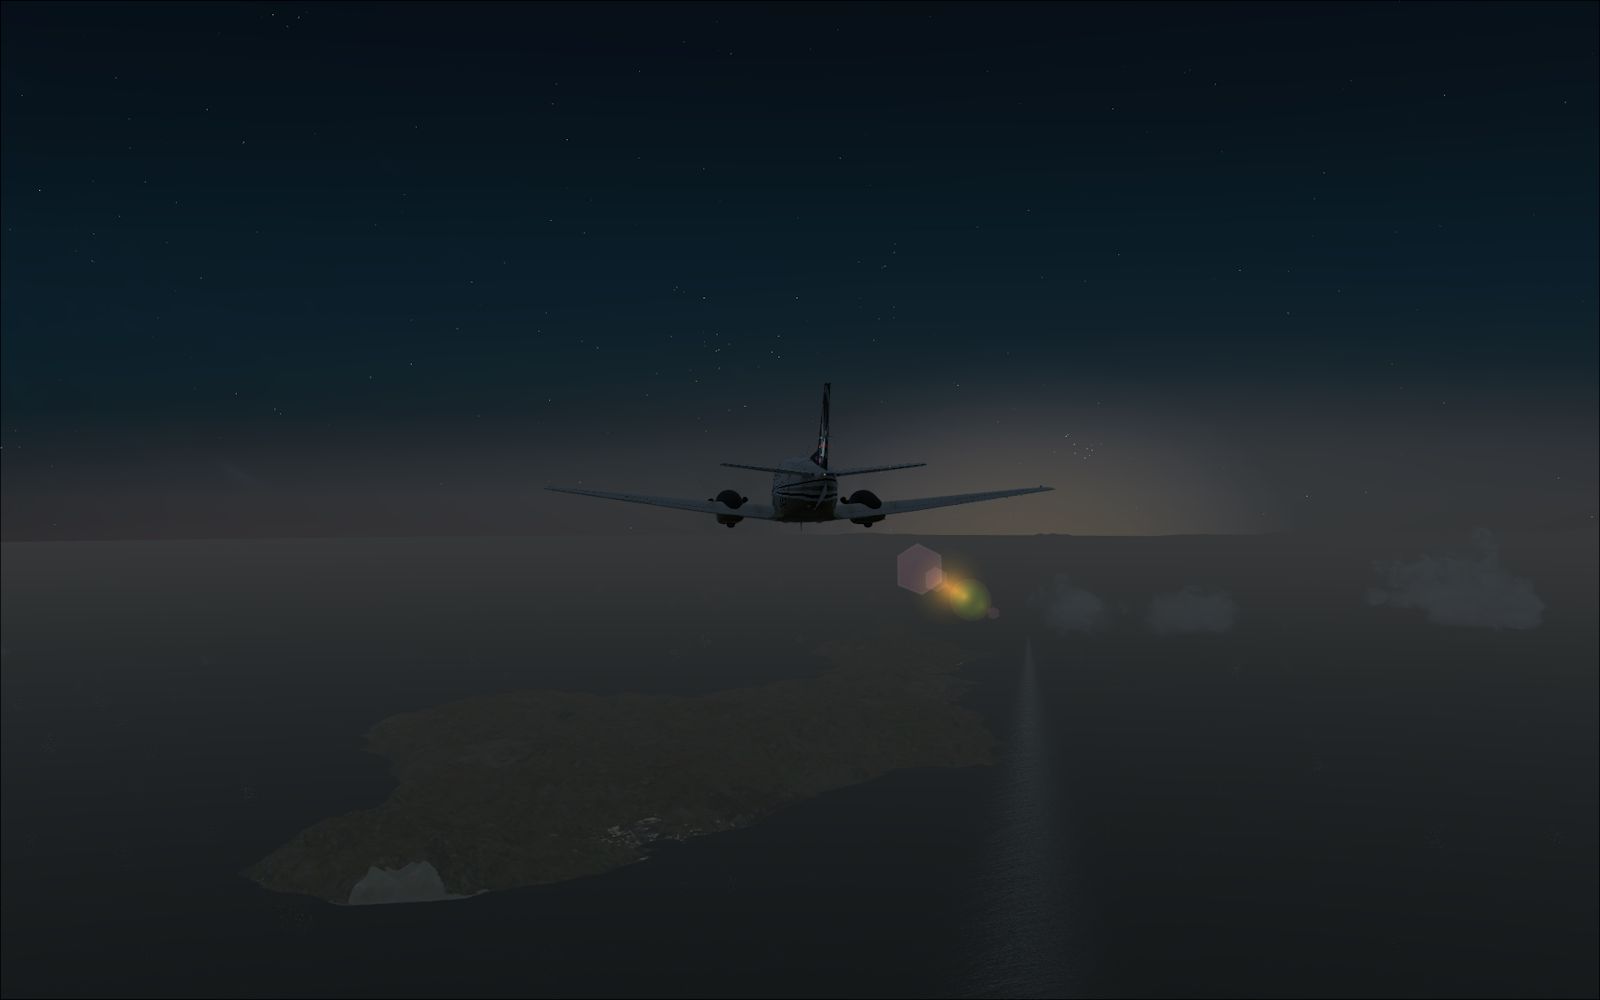 Carenado C90 night flight KCRQ-KSBA